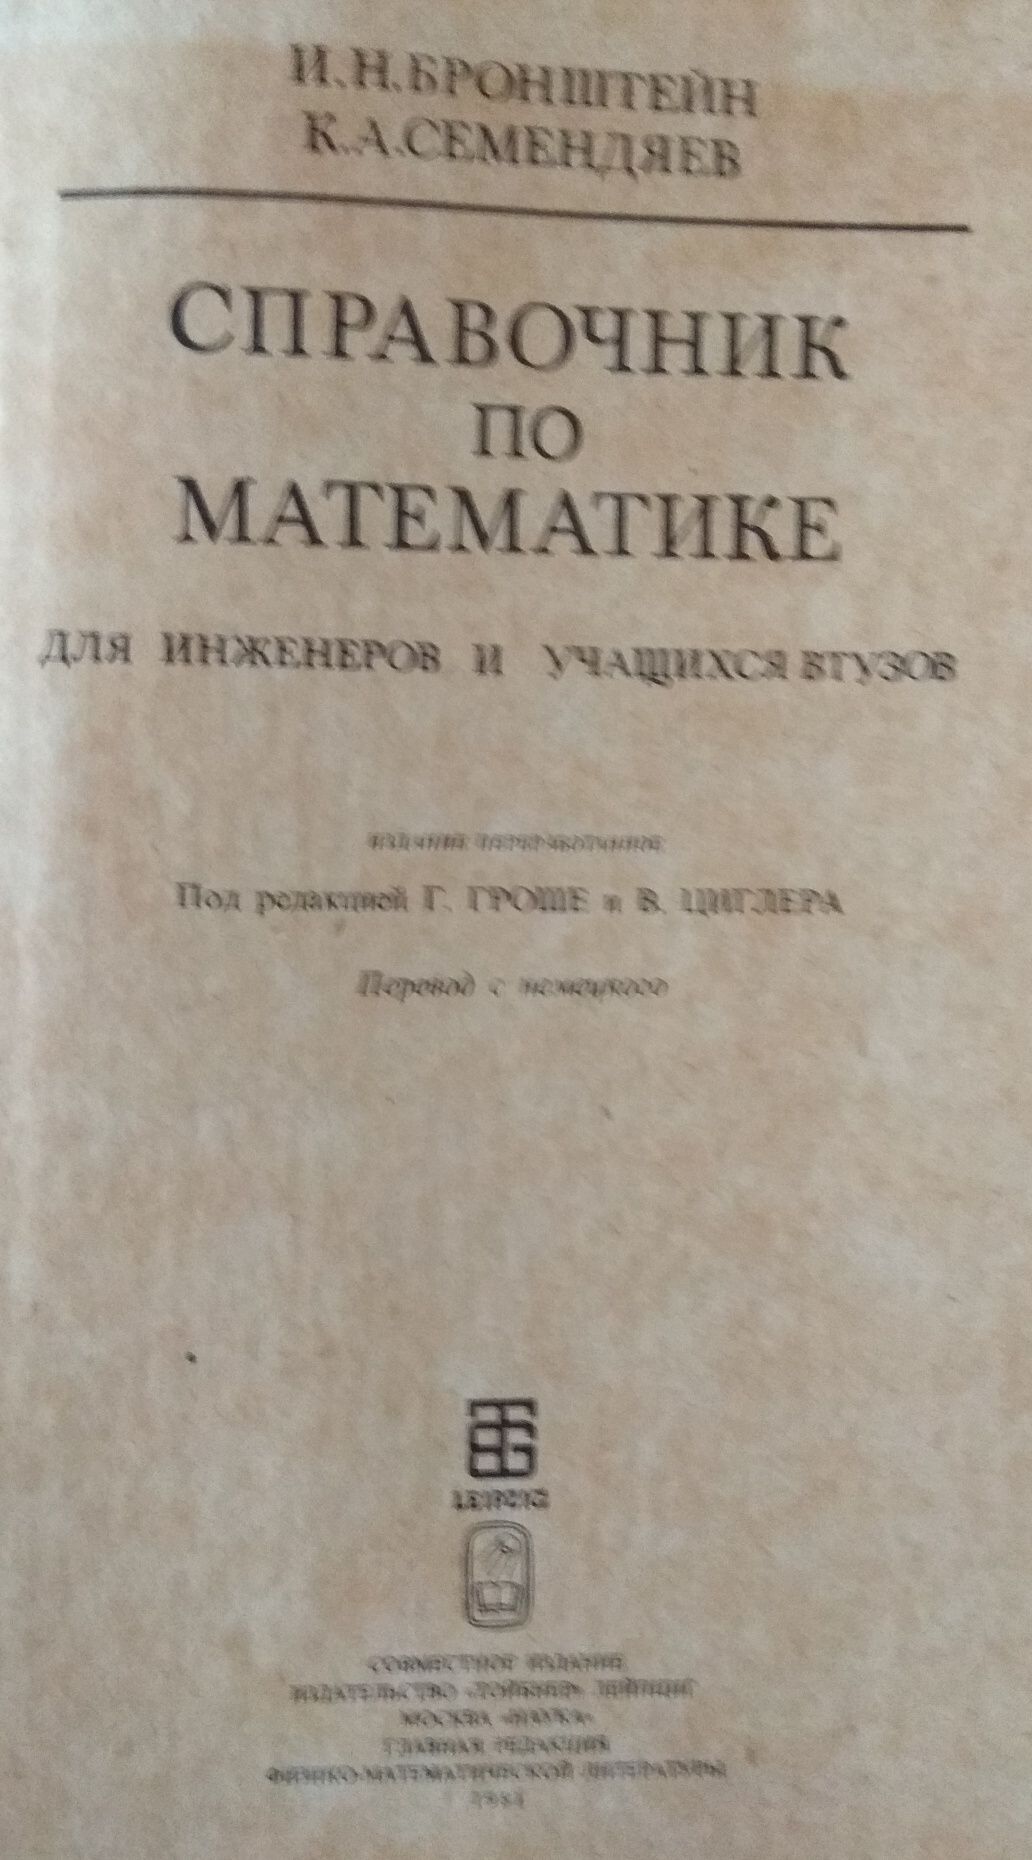 Справочник по математике. И.Н. Бронштейн, К.А. Семендяев.